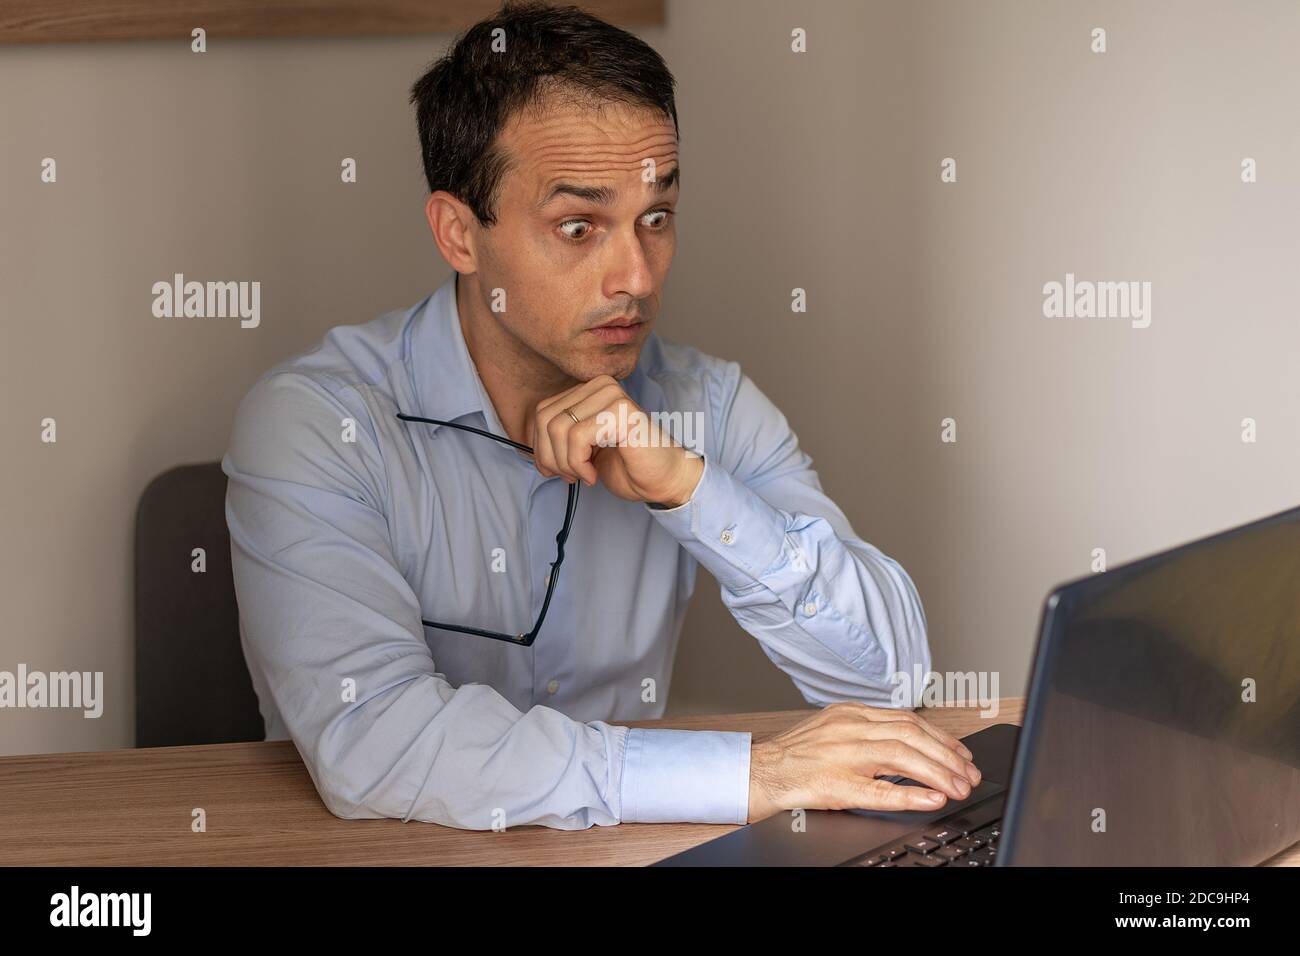 Homme mûr aux yeux renflés regardant son ordinateur portable. Banque D'Images